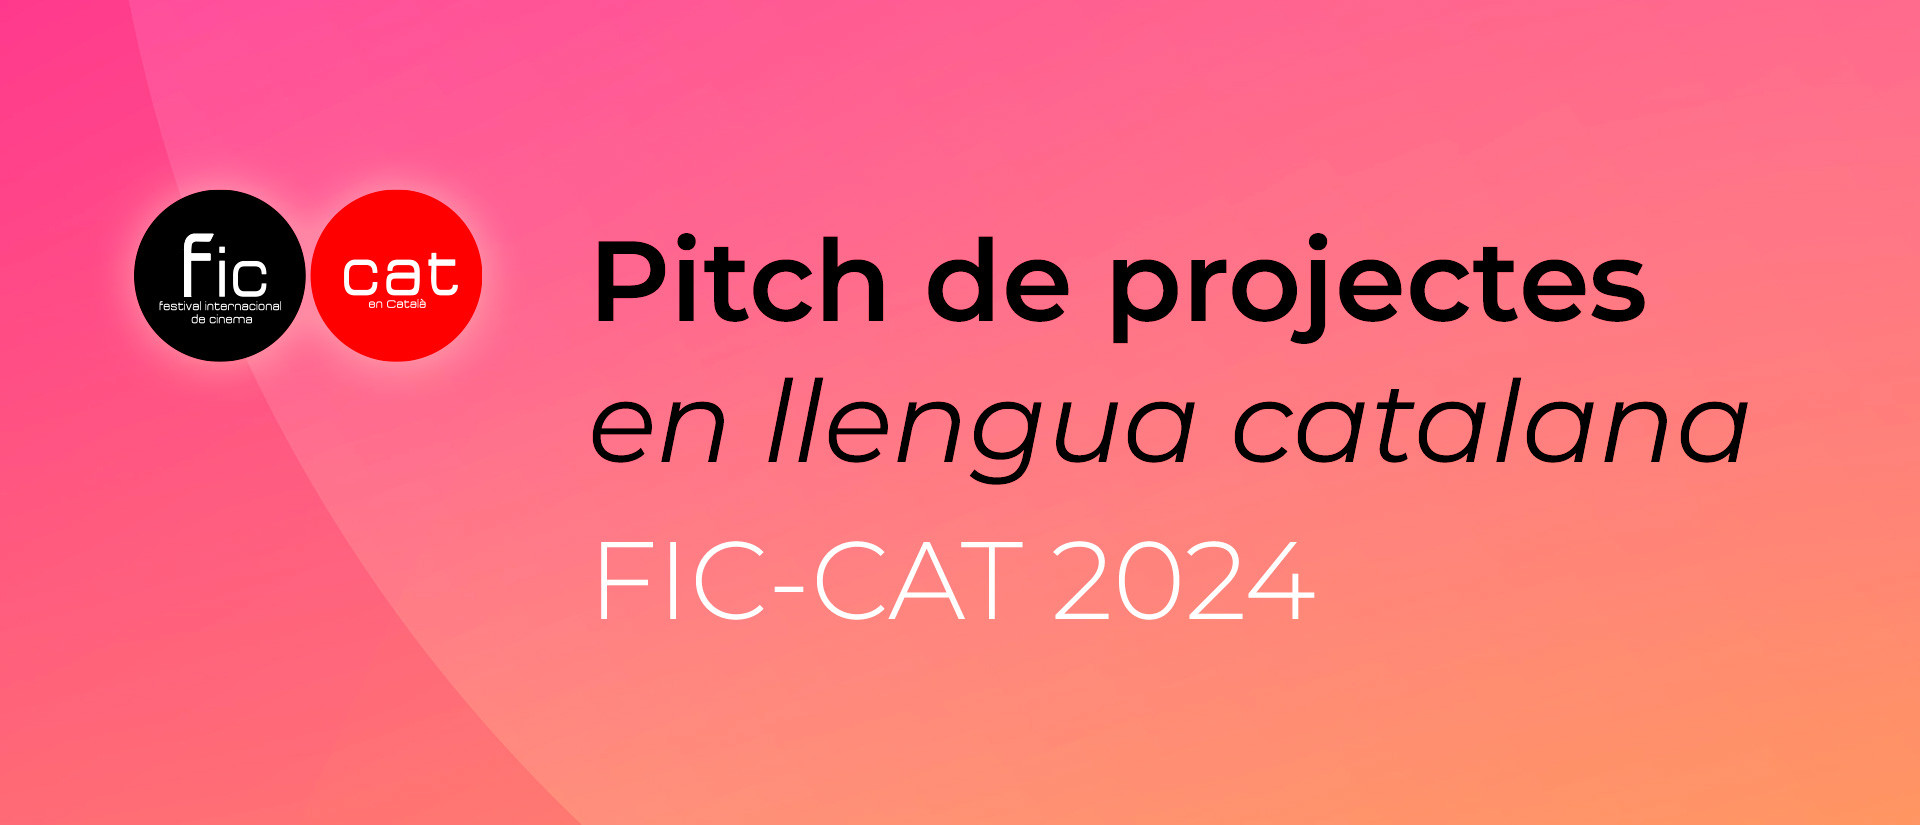 El FIC-CAT celebrarà un pitch de projectes en la seva 16a edició